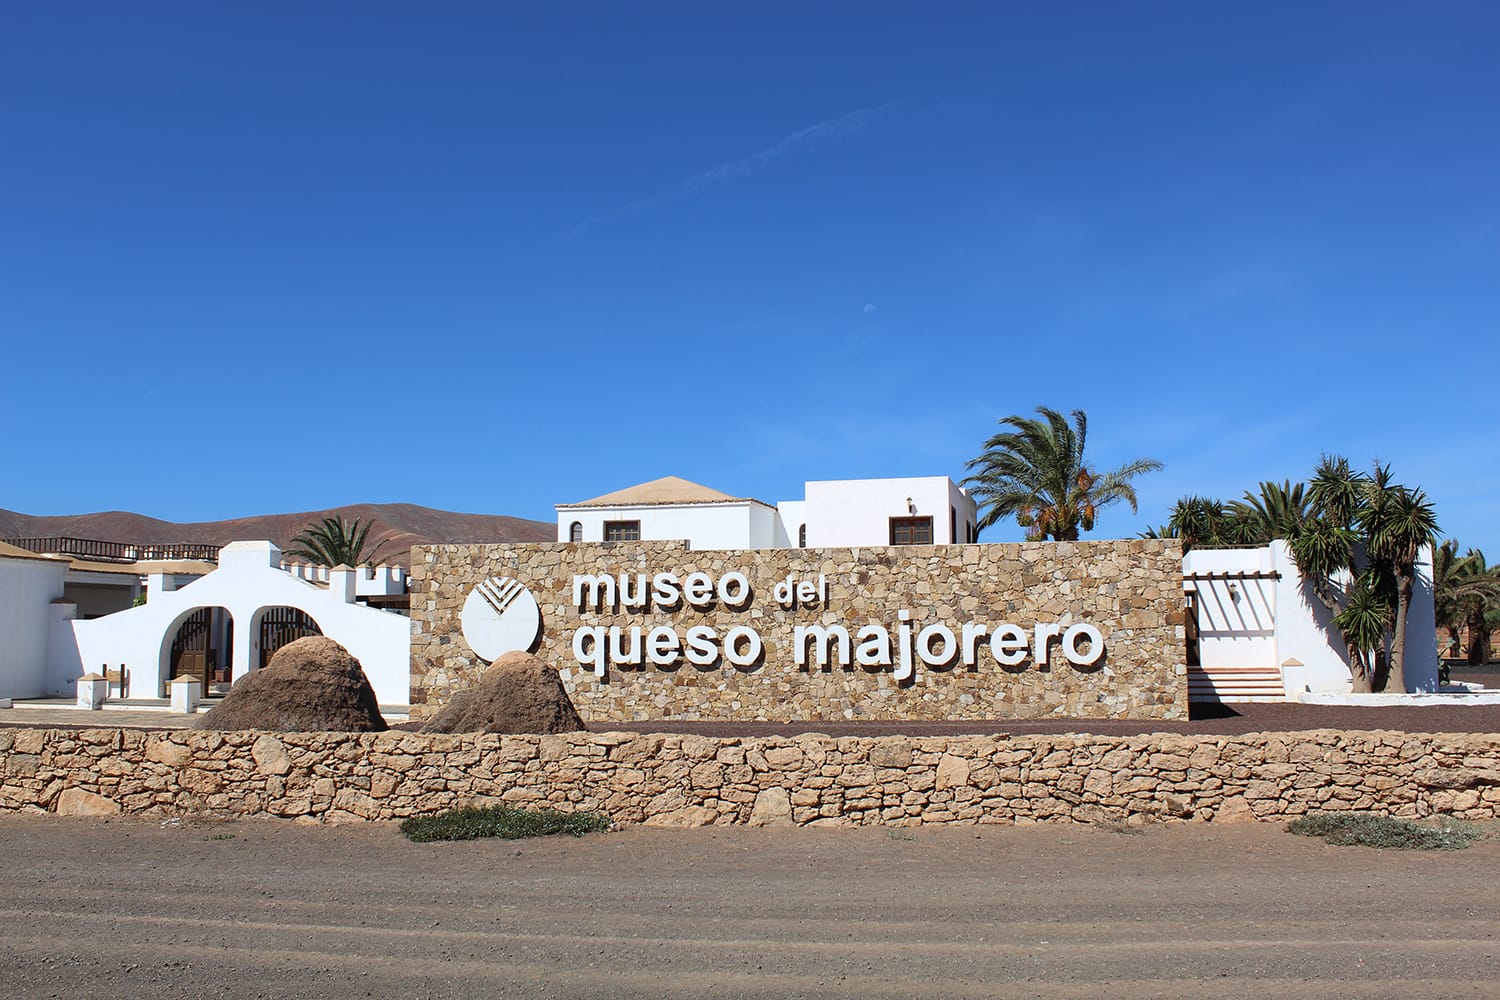 Museo del Queso Majorero in Fuerteventura, Canary Islands, Spain